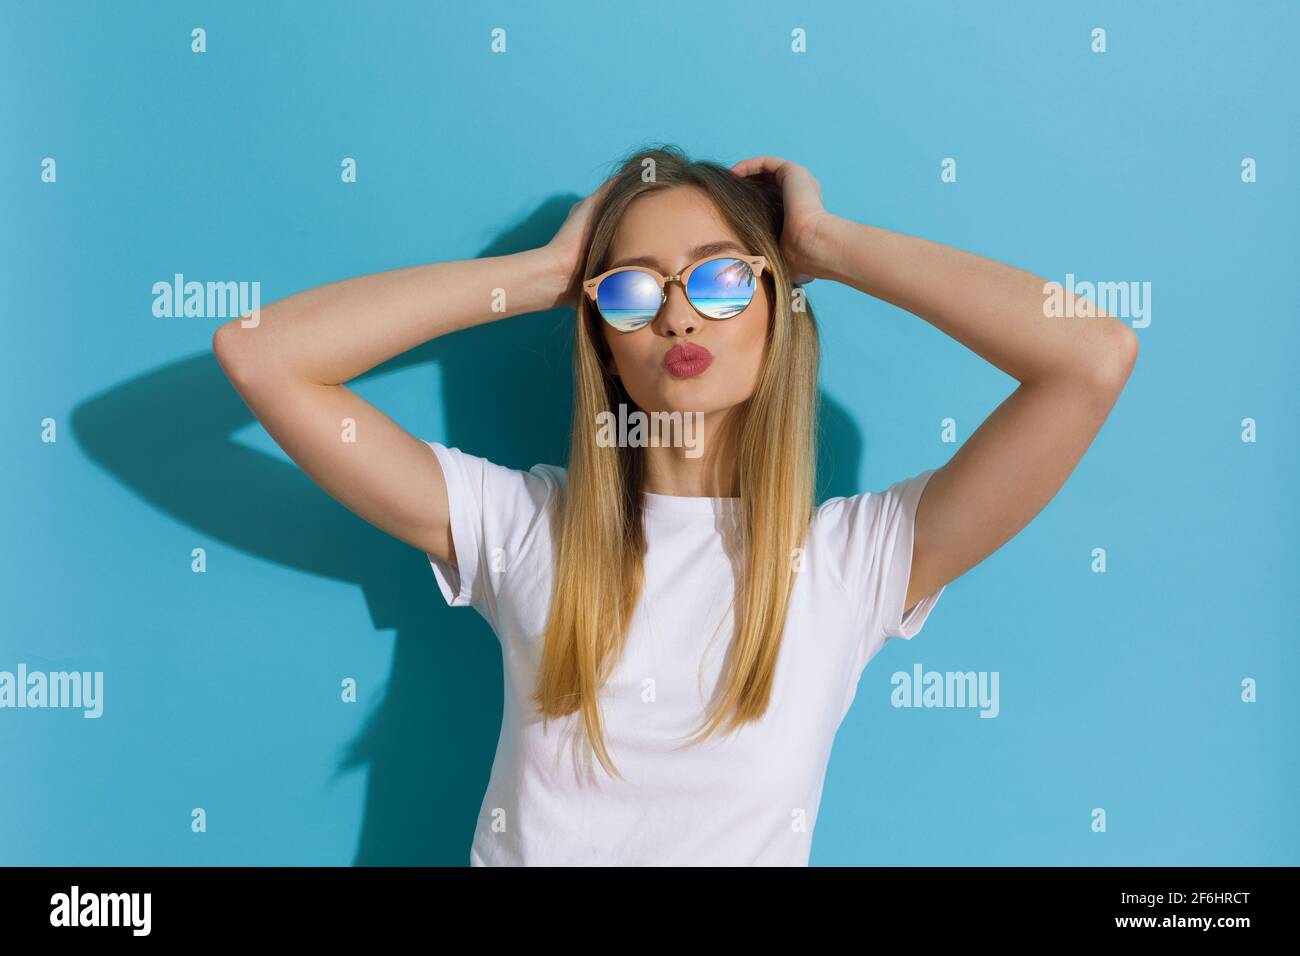 Jeune femme blonde en chemise blanche et lunettes de soleil pose avec la tête dans les mains et envoie un baiser. Taille relevée sur fond bleu. Banque D'Images